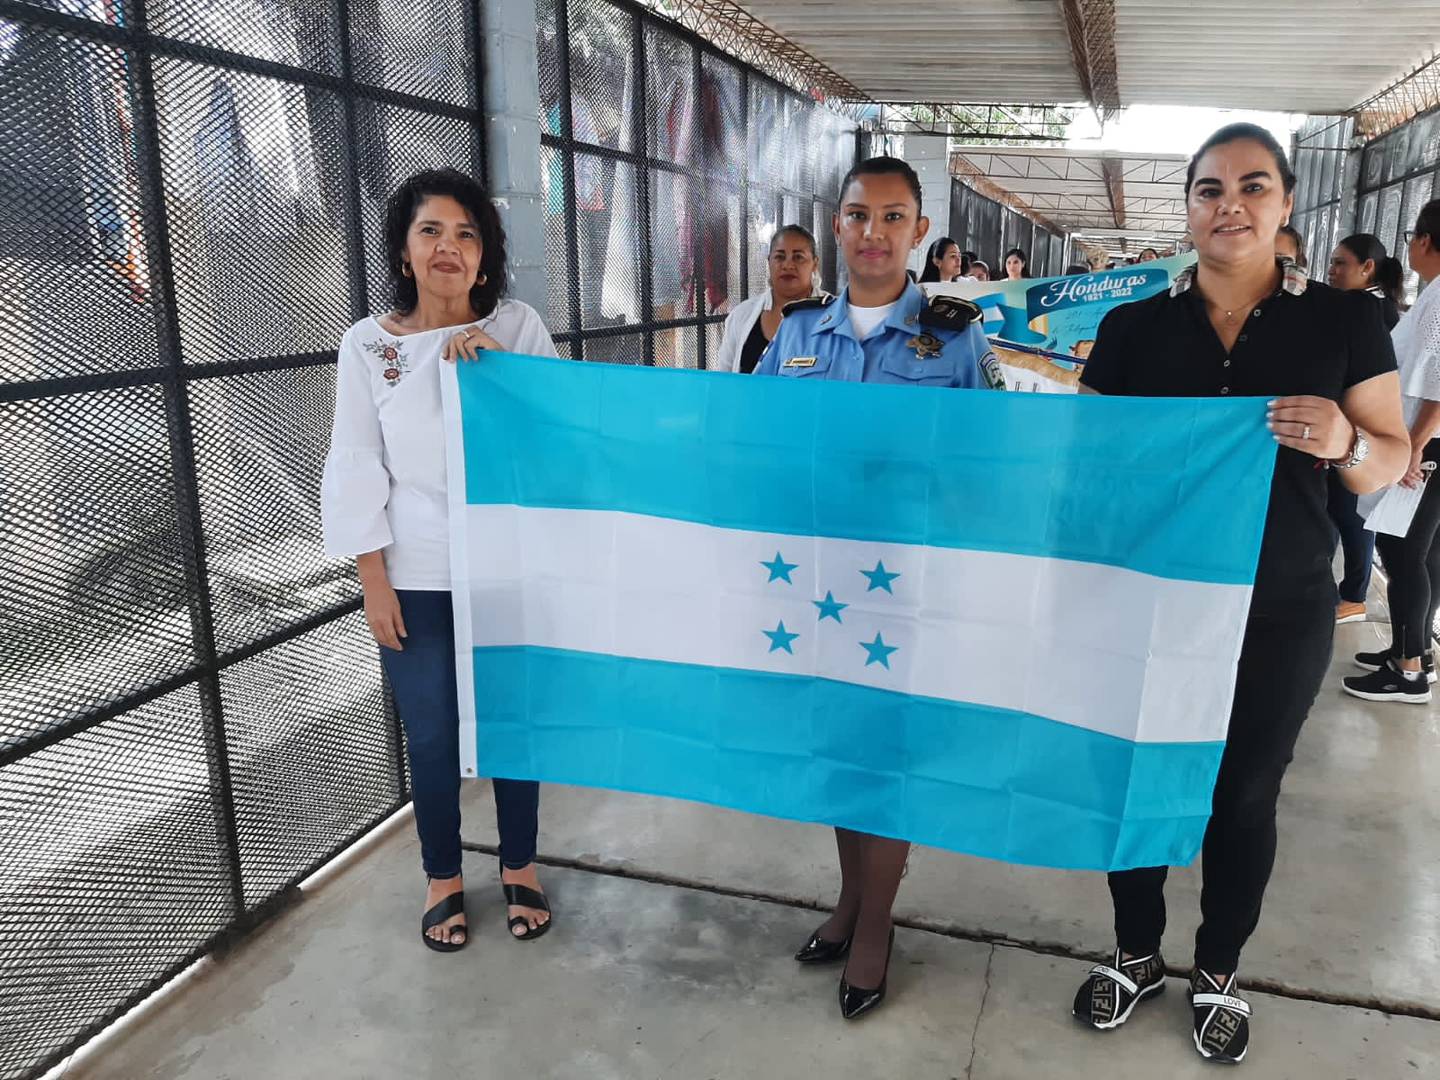 La exprimera dama reapareció el 15 de septiembre portando la bandera nacional en la celebración de los 201 años de independencia en la Penitenciaria Nacional de Tamara.dfd